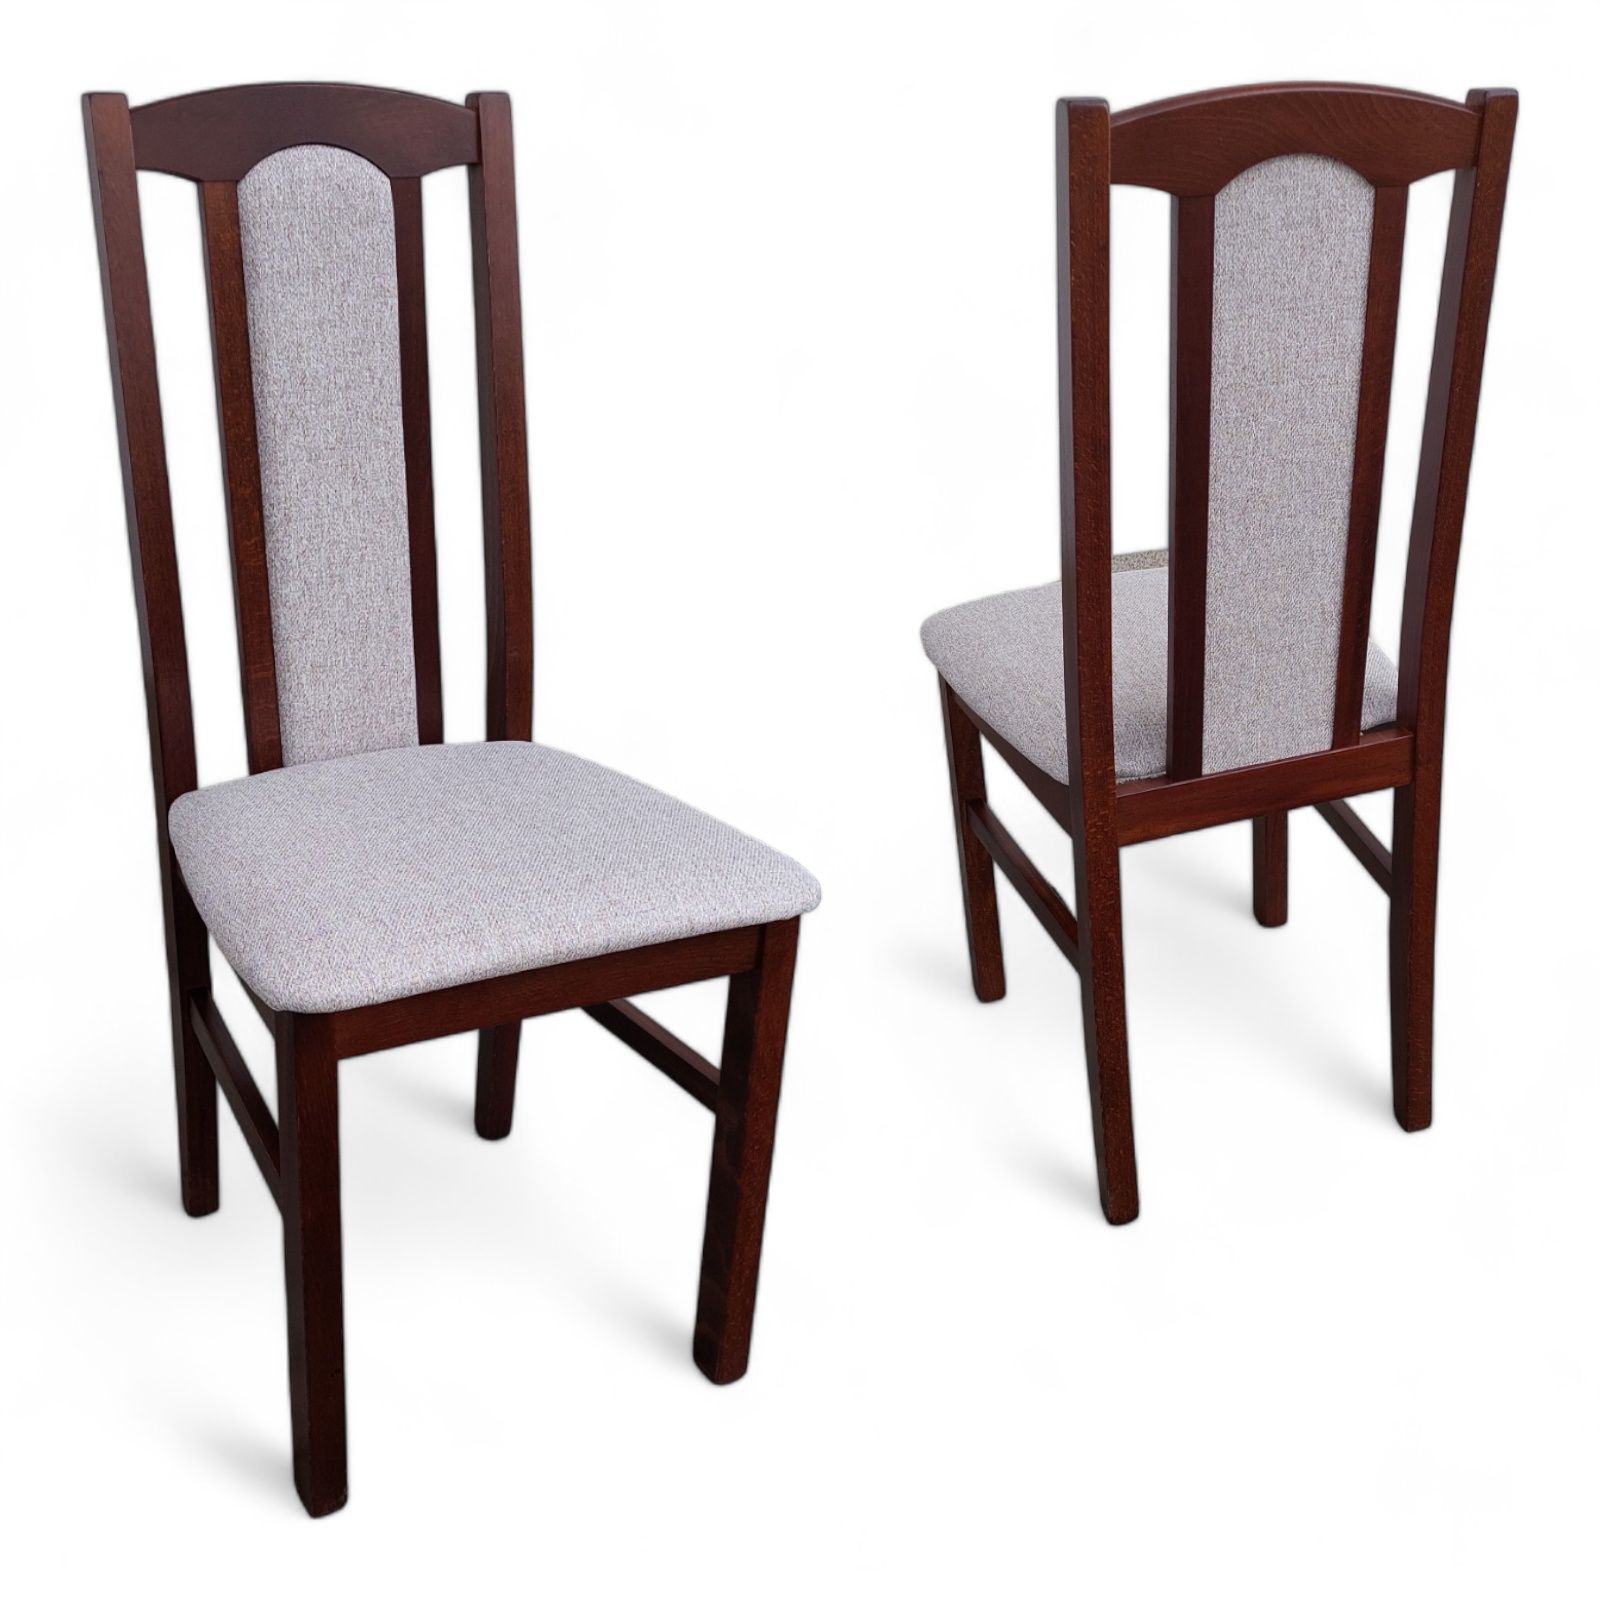 Stół 140/180/80 + 6 krzeseł z drewna bukowego różne kolory